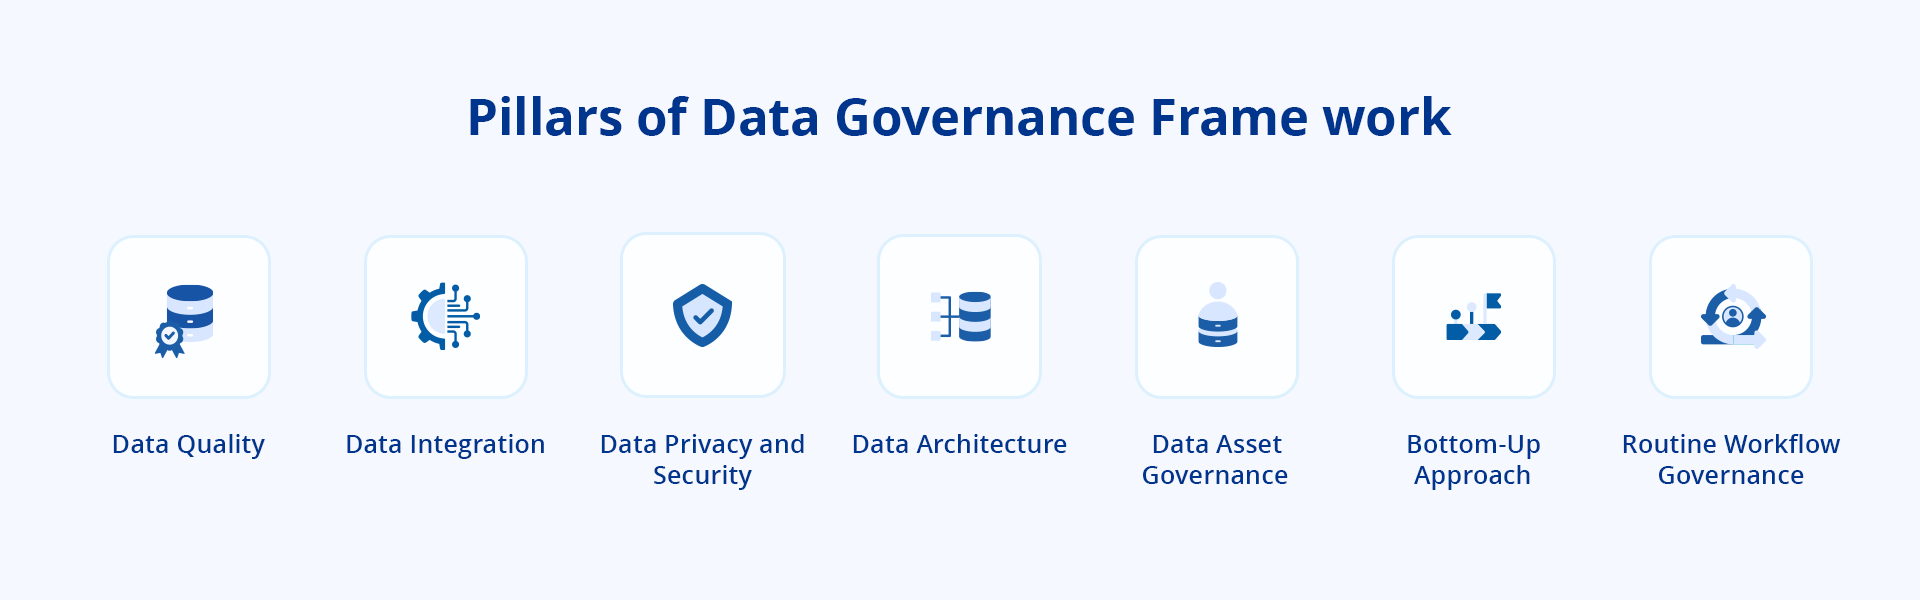 Pillars of data governance framework